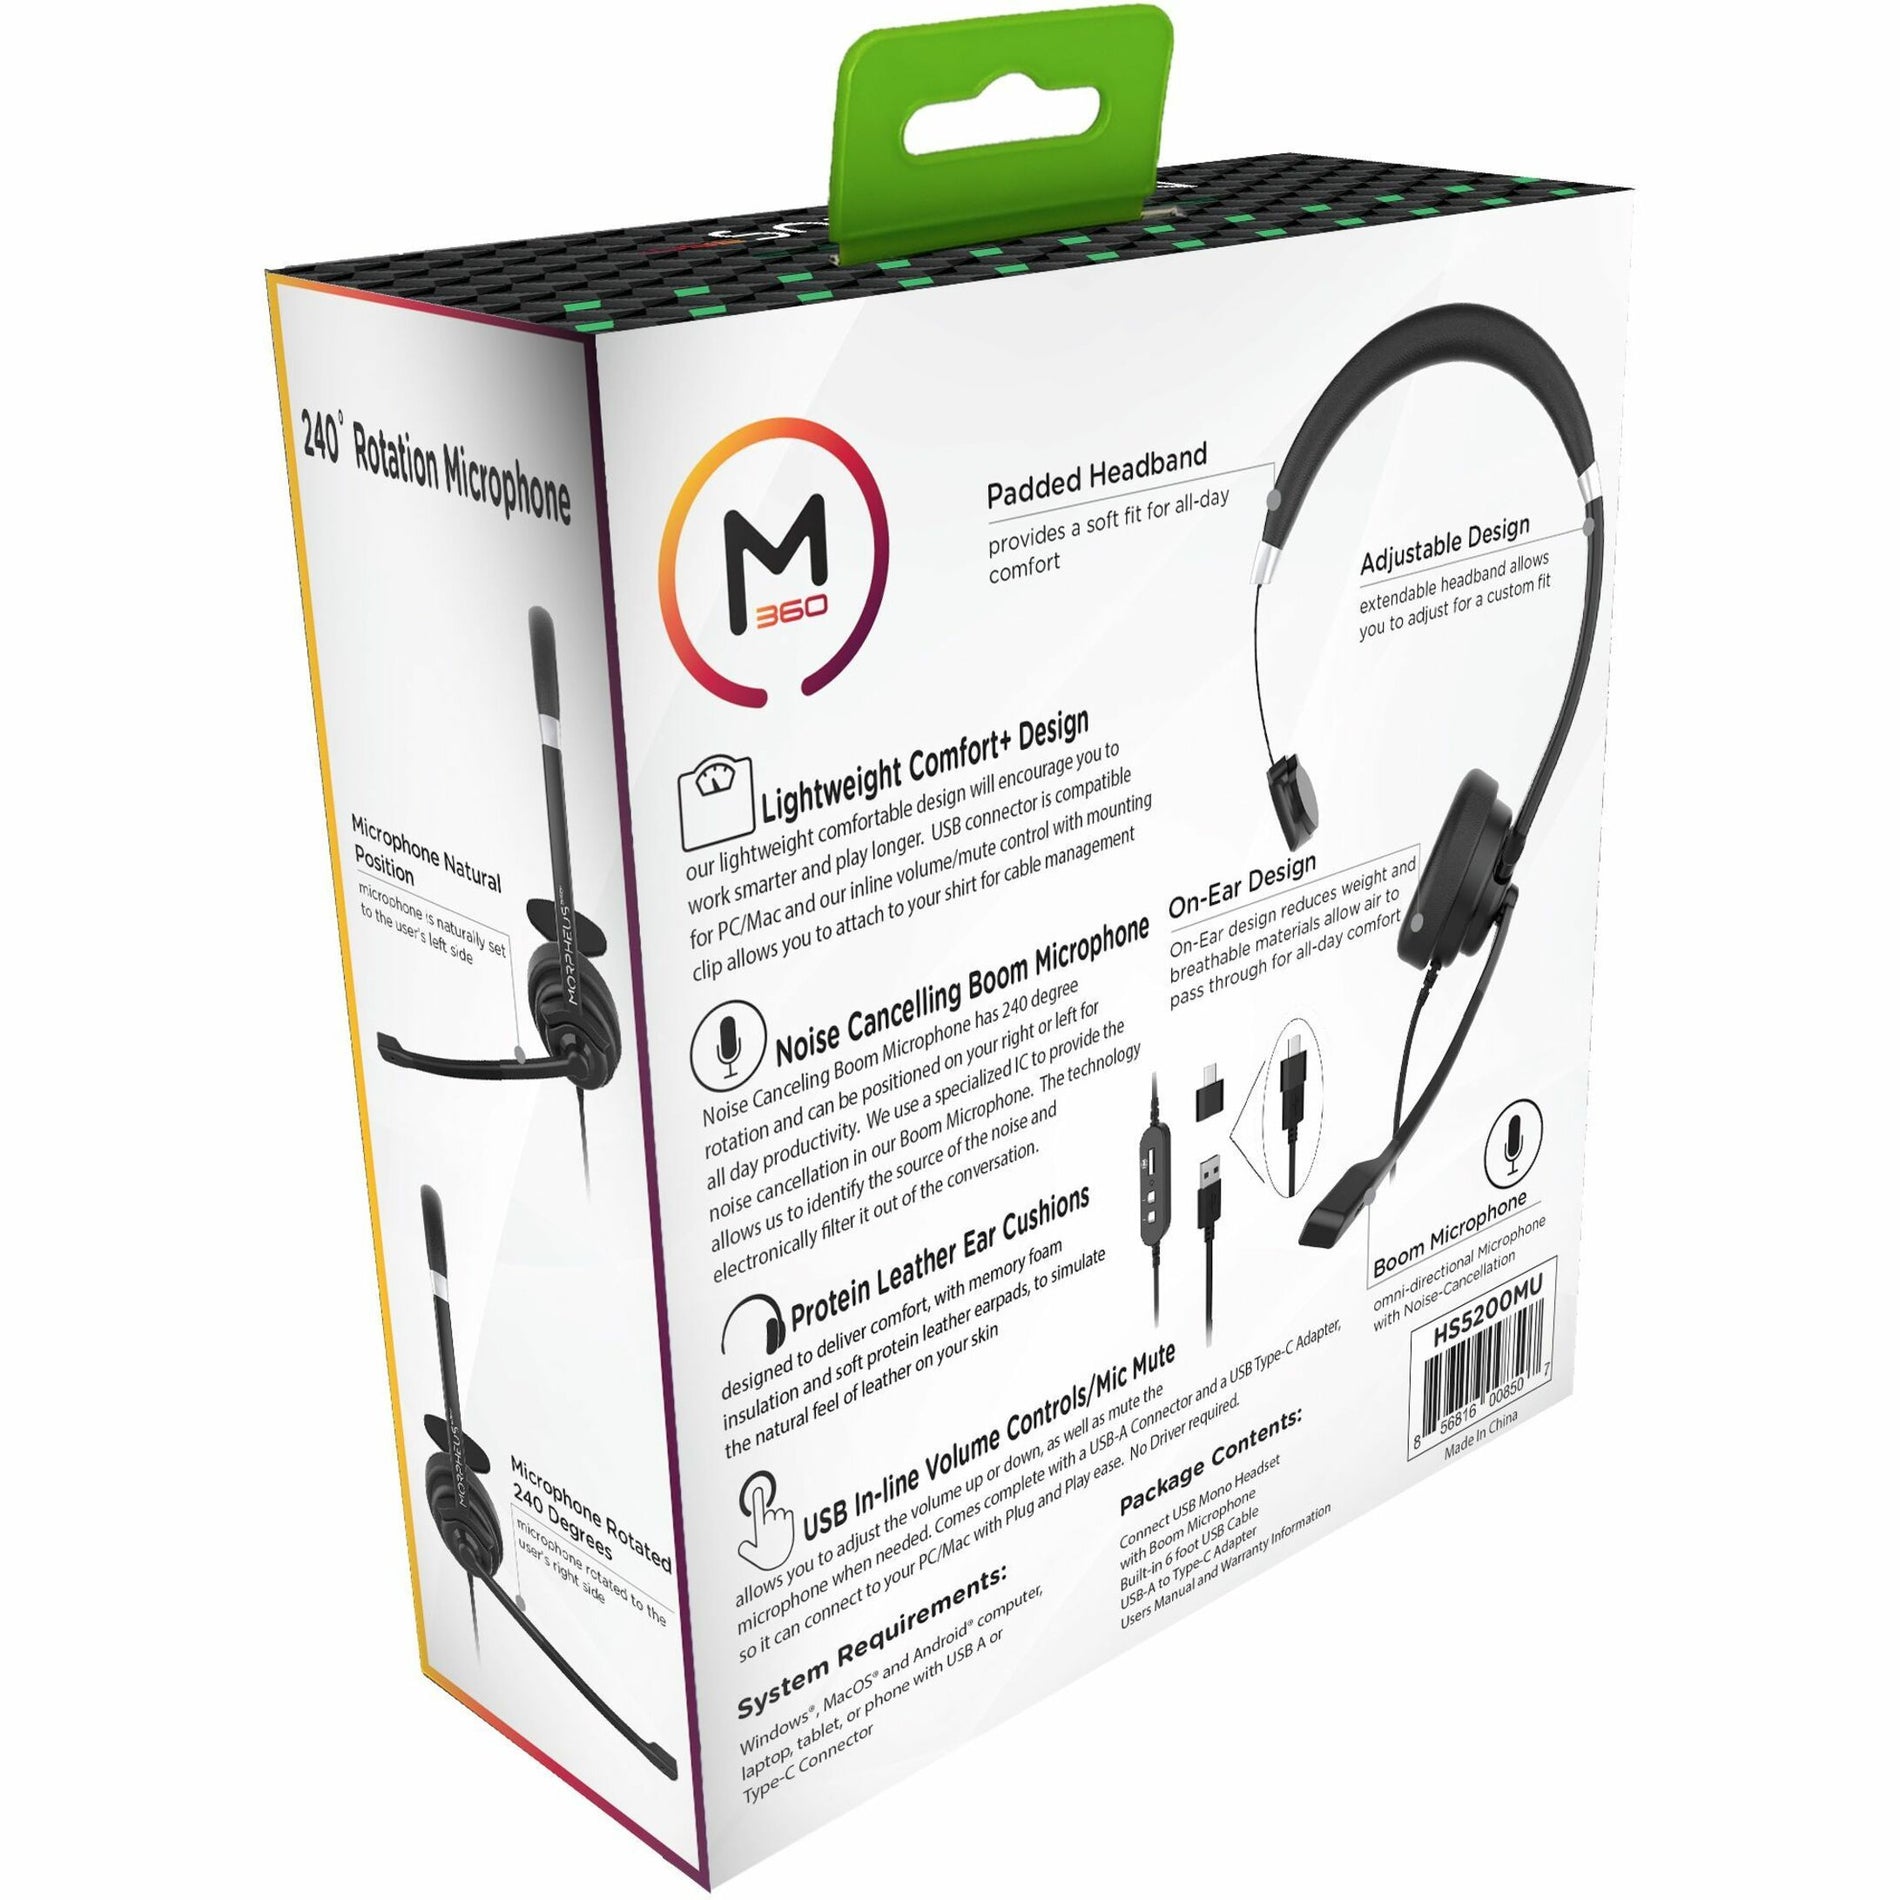 Casque mono USB Morpheus 360 HS5200MU avec microphone à perche confortable brancher et jouer léger.